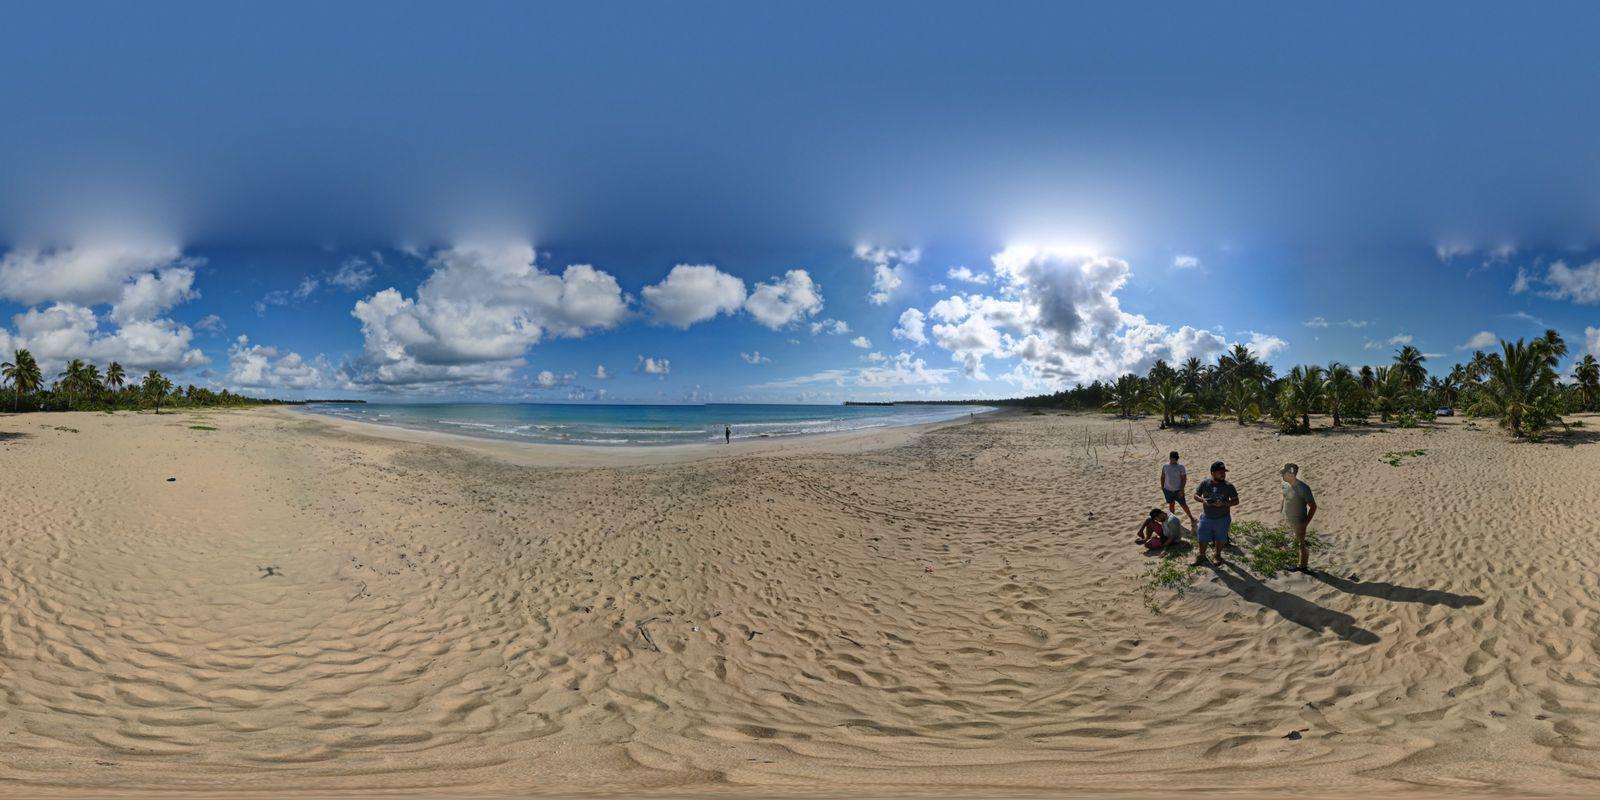 Imagen tomada por un dron de Playa Esmeralda, uno de los mayores atractivos de Miches. Foto: Jerfy Matos